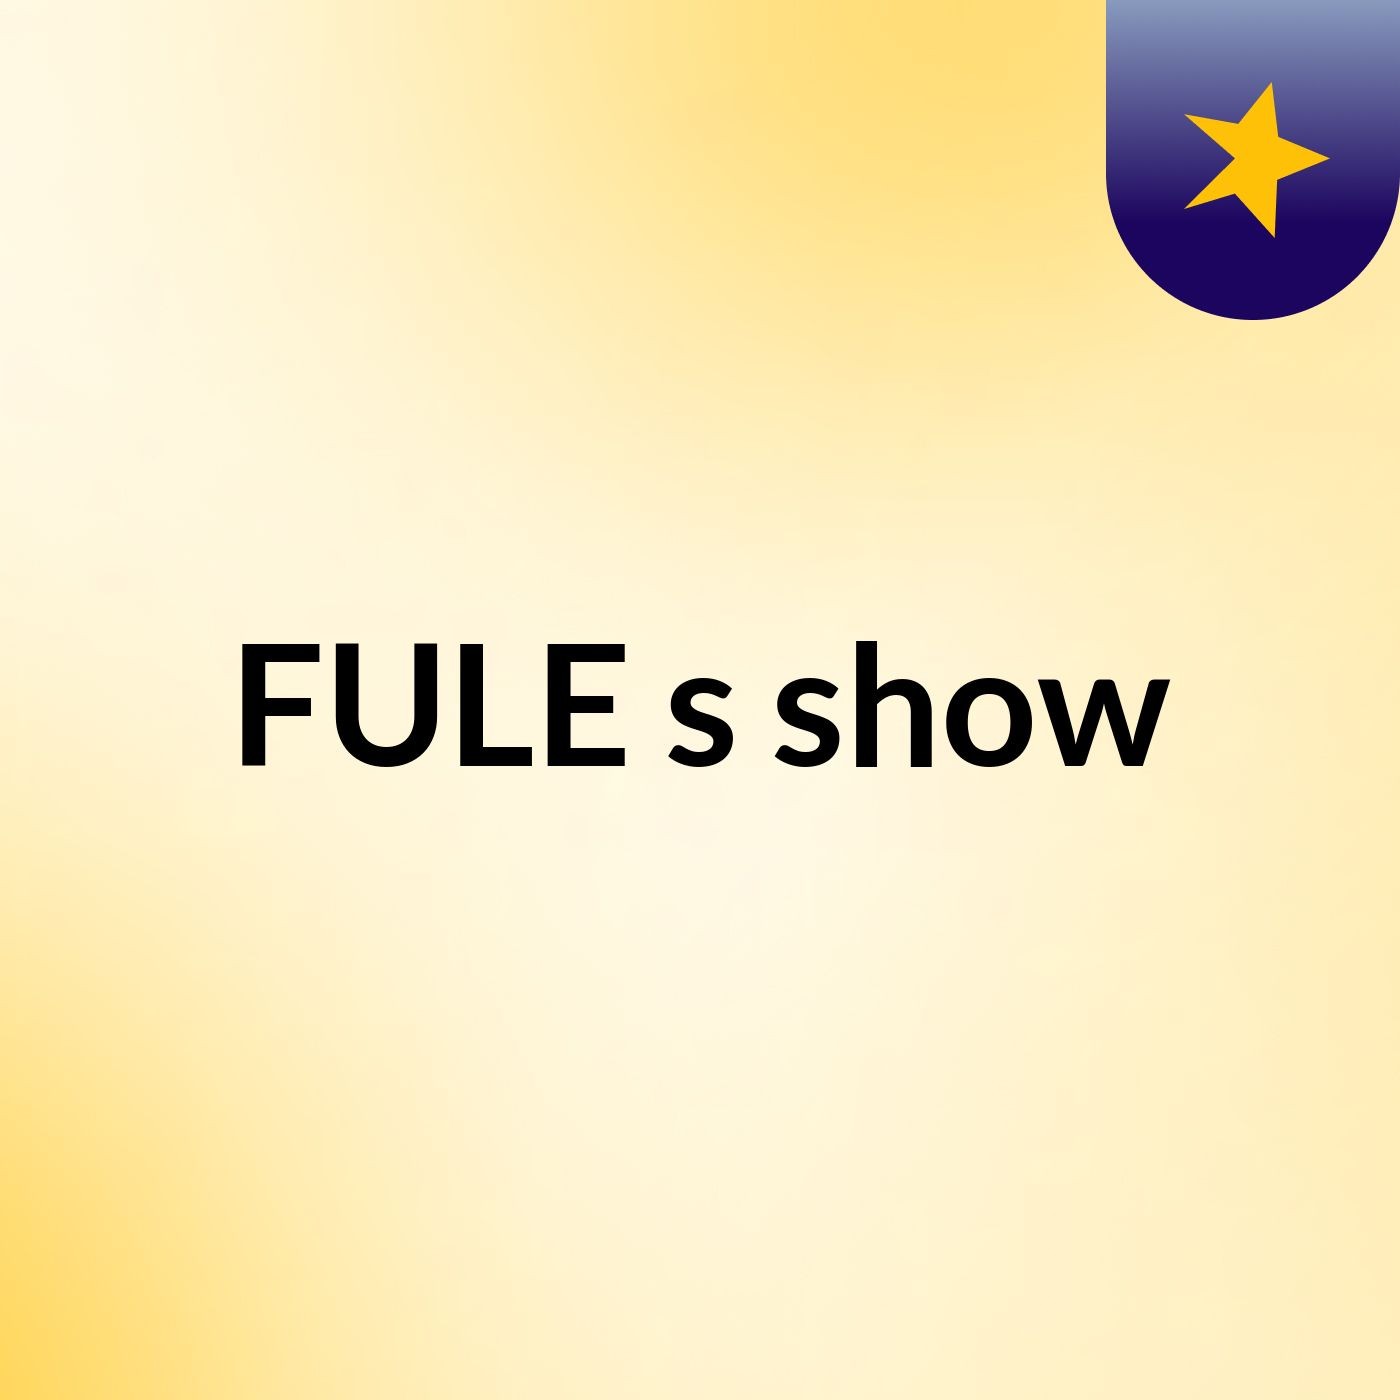 FULE's show